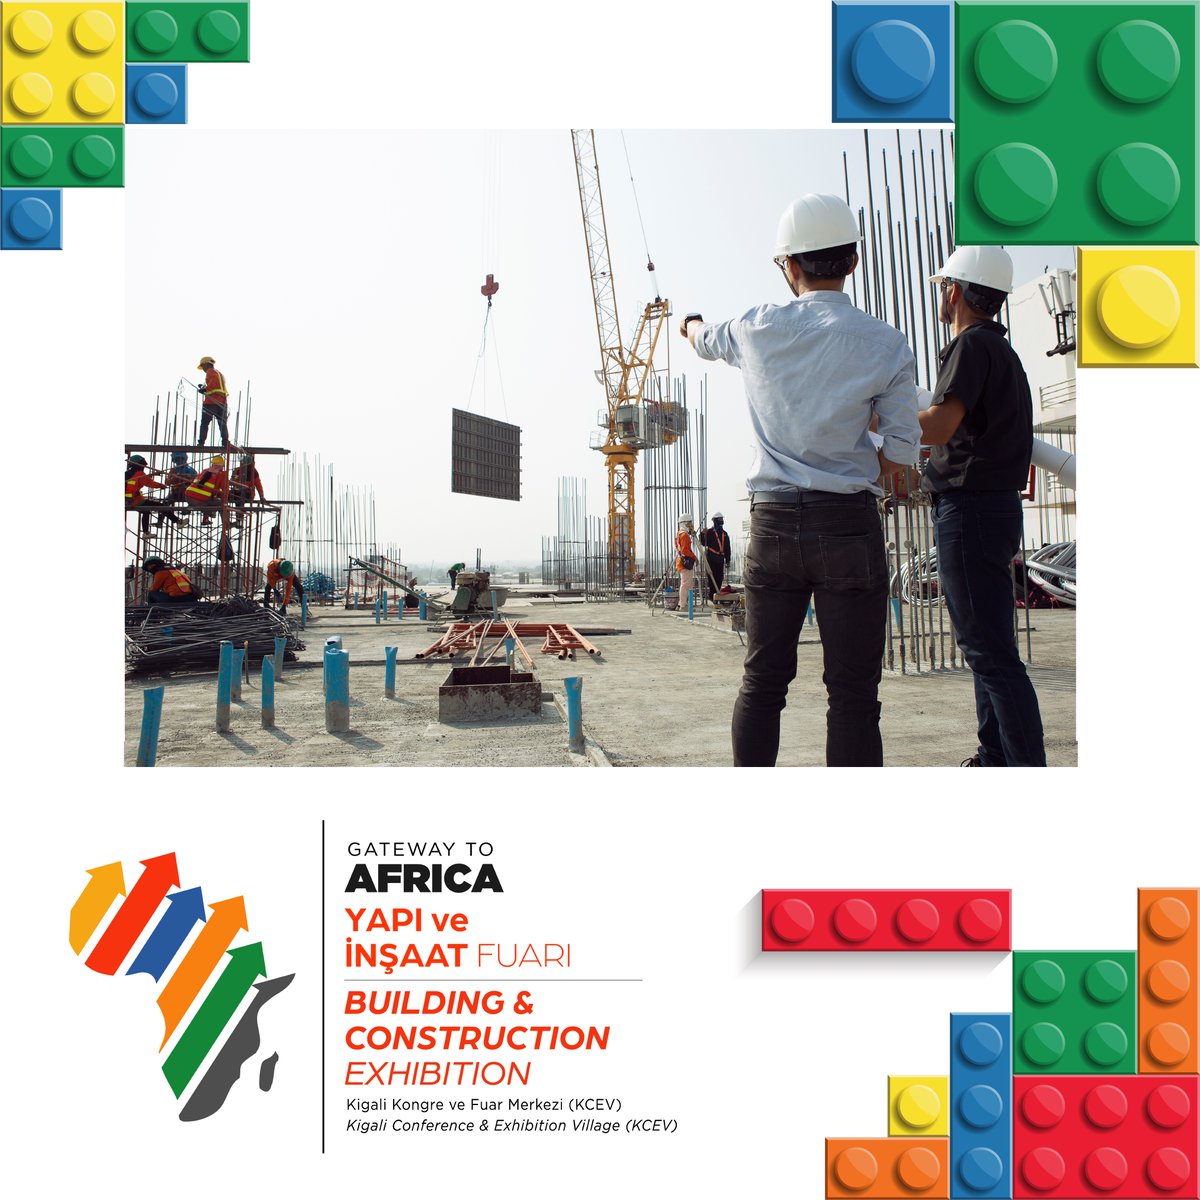 Sektöre dair en yeni projeler Gateway to Africa Yapı ve İnşaat Fuarı'nda!

Ön kayıt formu için tıklayın. 
bit.ly/3HJ6Tm1

📅 26-28 Eylül 2023
📍Kigali Kongre ve Sergi Sarayı (KCEV)

#trade #gatewaytoafrica #africa #export #ihracat #ticaret #fuar #cnrgatewaytoafrica